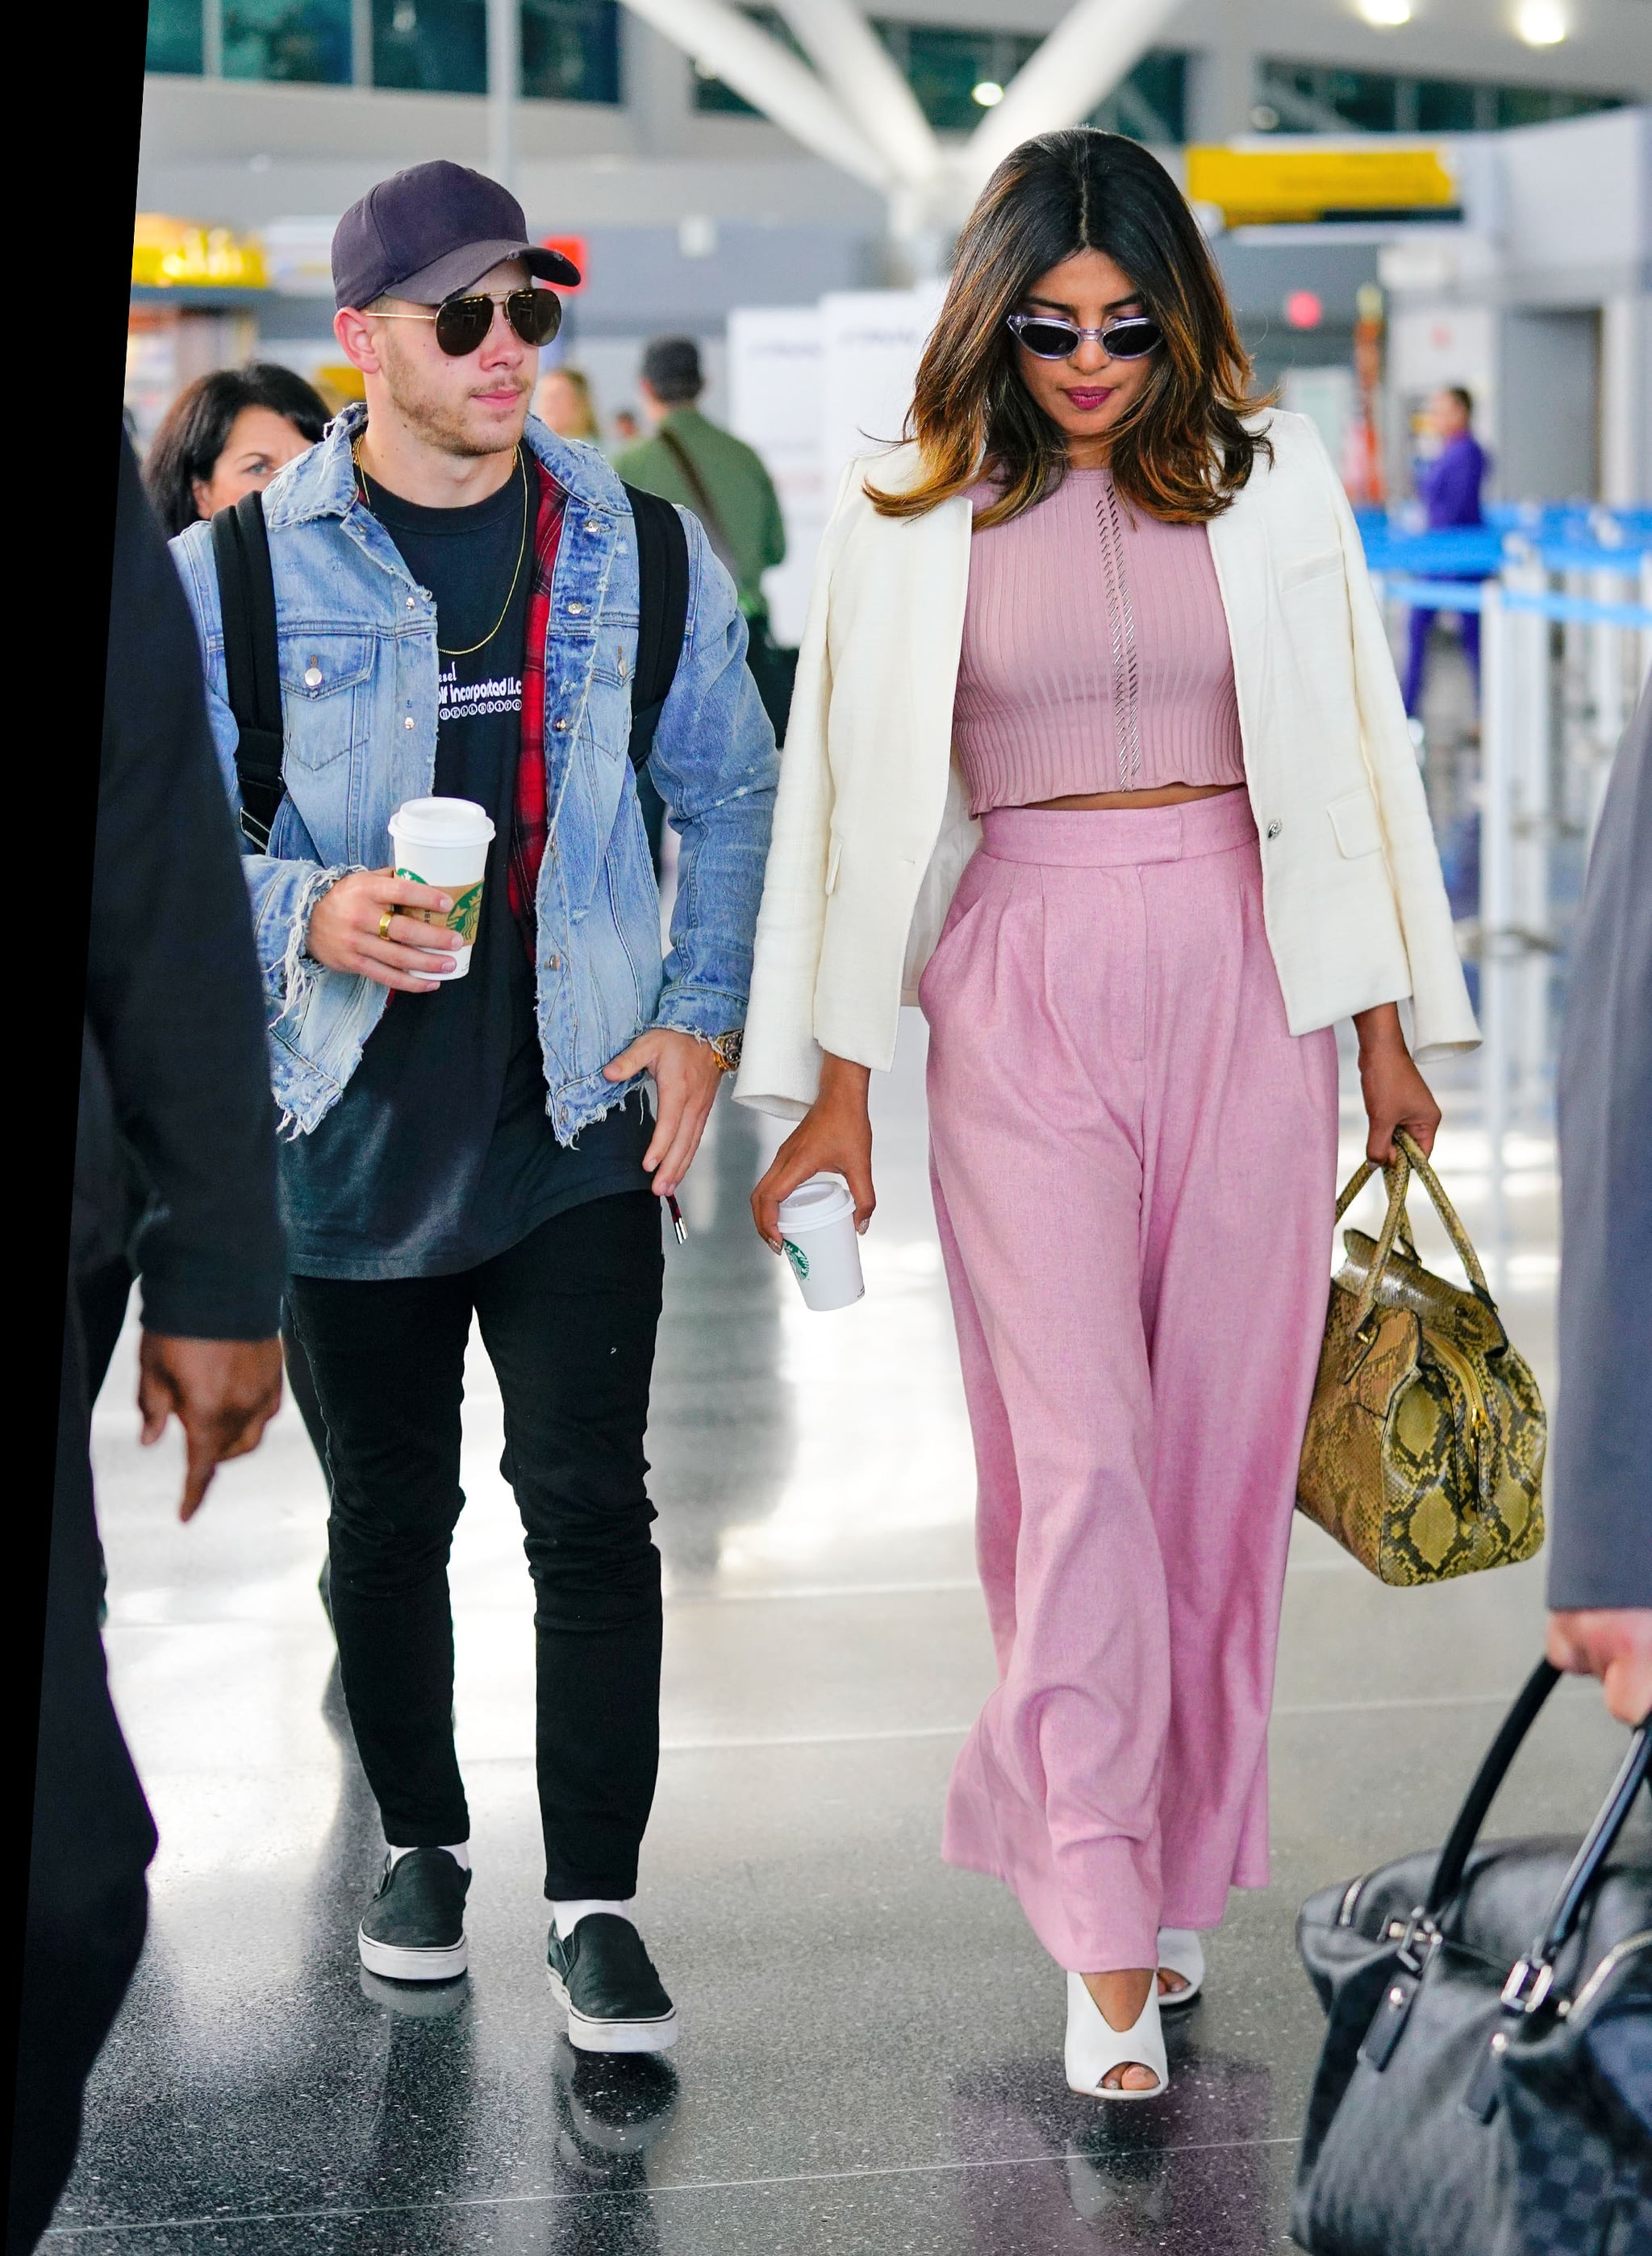 Cute Airport Outfits | POPSUGAR Fashion